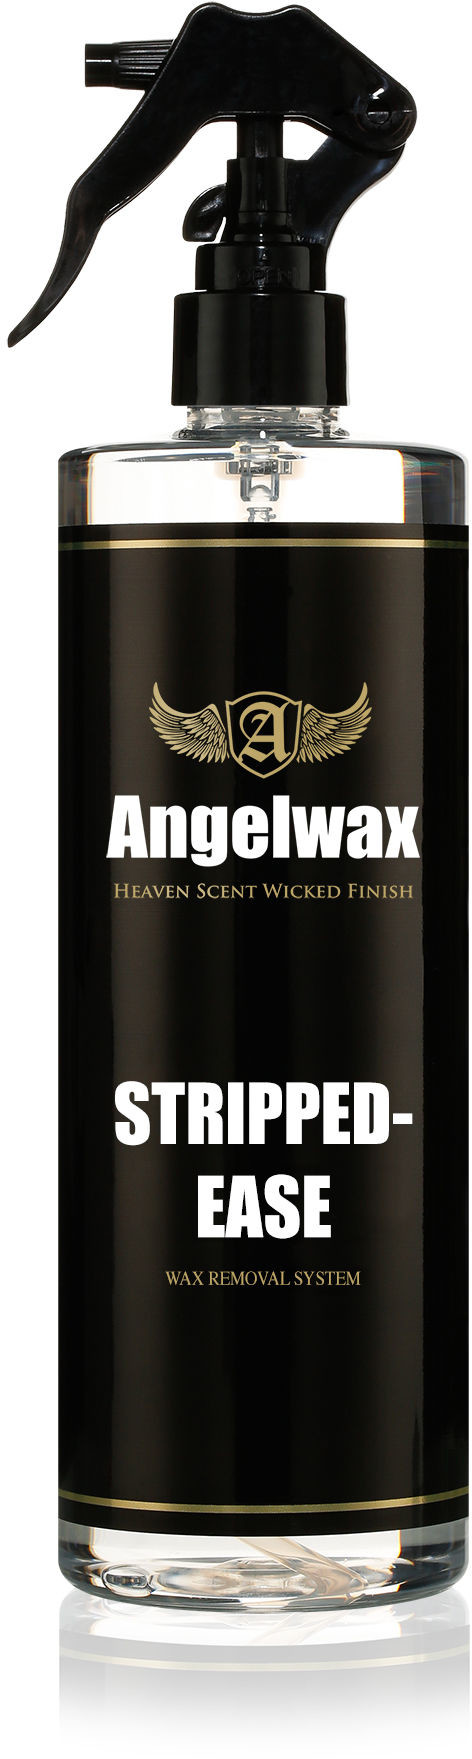 AngelWax Stripped Ease jak Panel Wipe odtłuszcza lakier przed woskiem i powłoką 500ml ANG000060